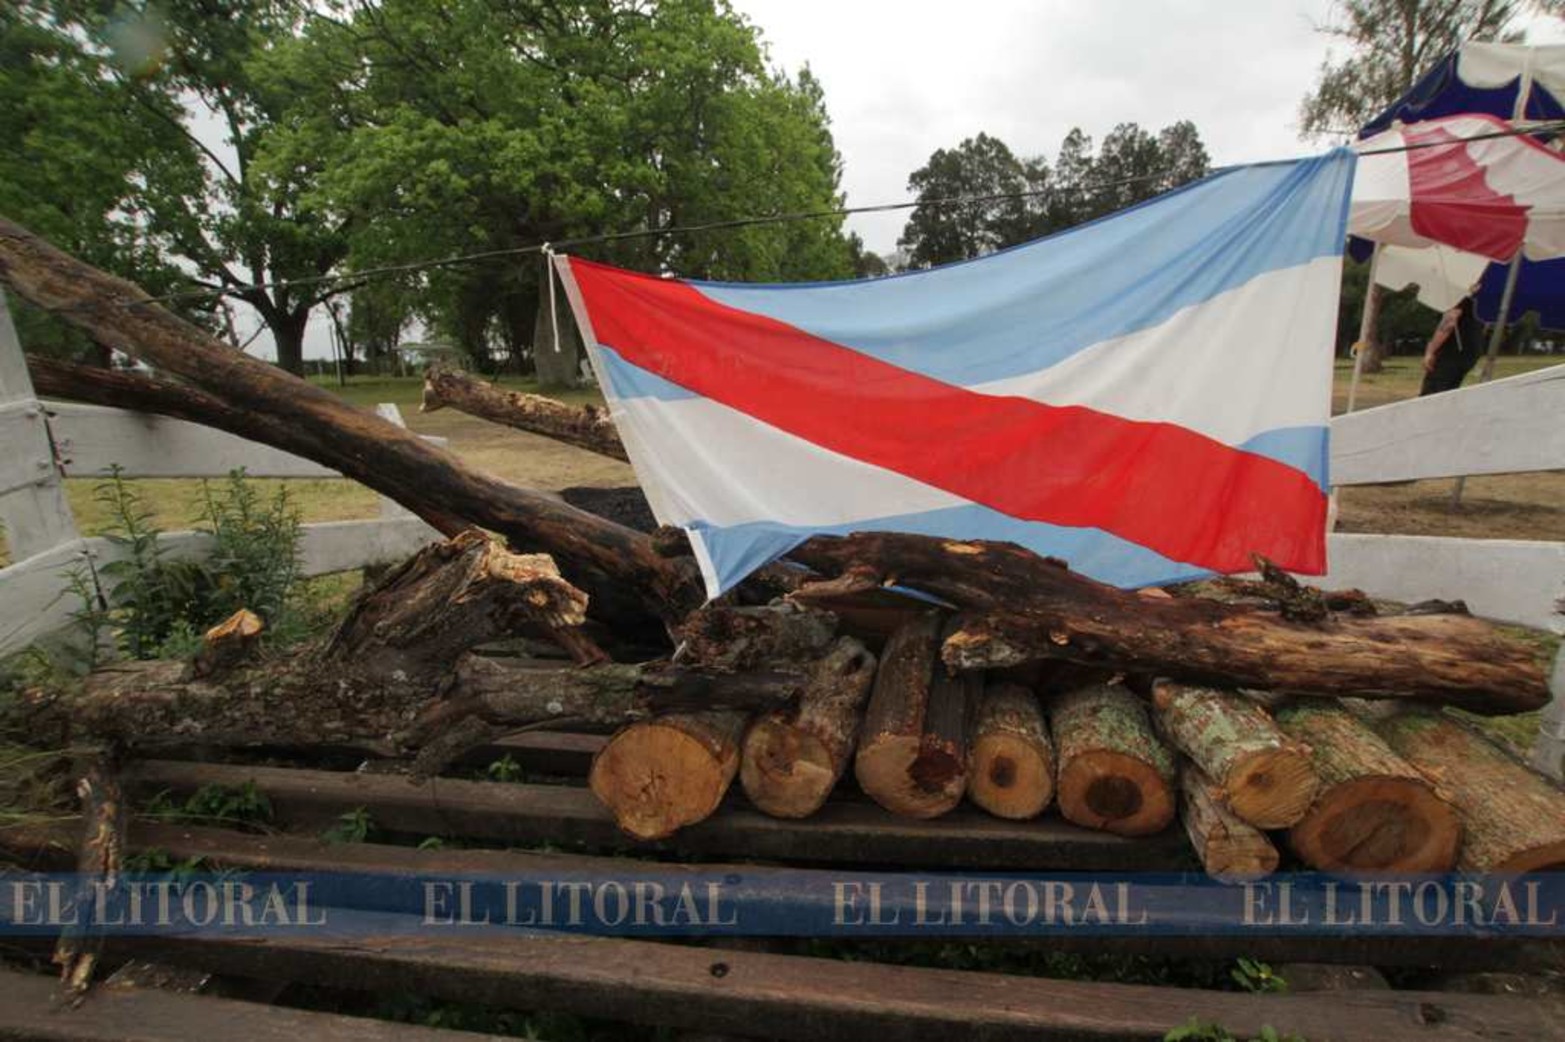 No pasa mas nadie. El segundo guardaganados (solo pasan autos) está bloqueado por troncos y la bandera de Entre Ríos.